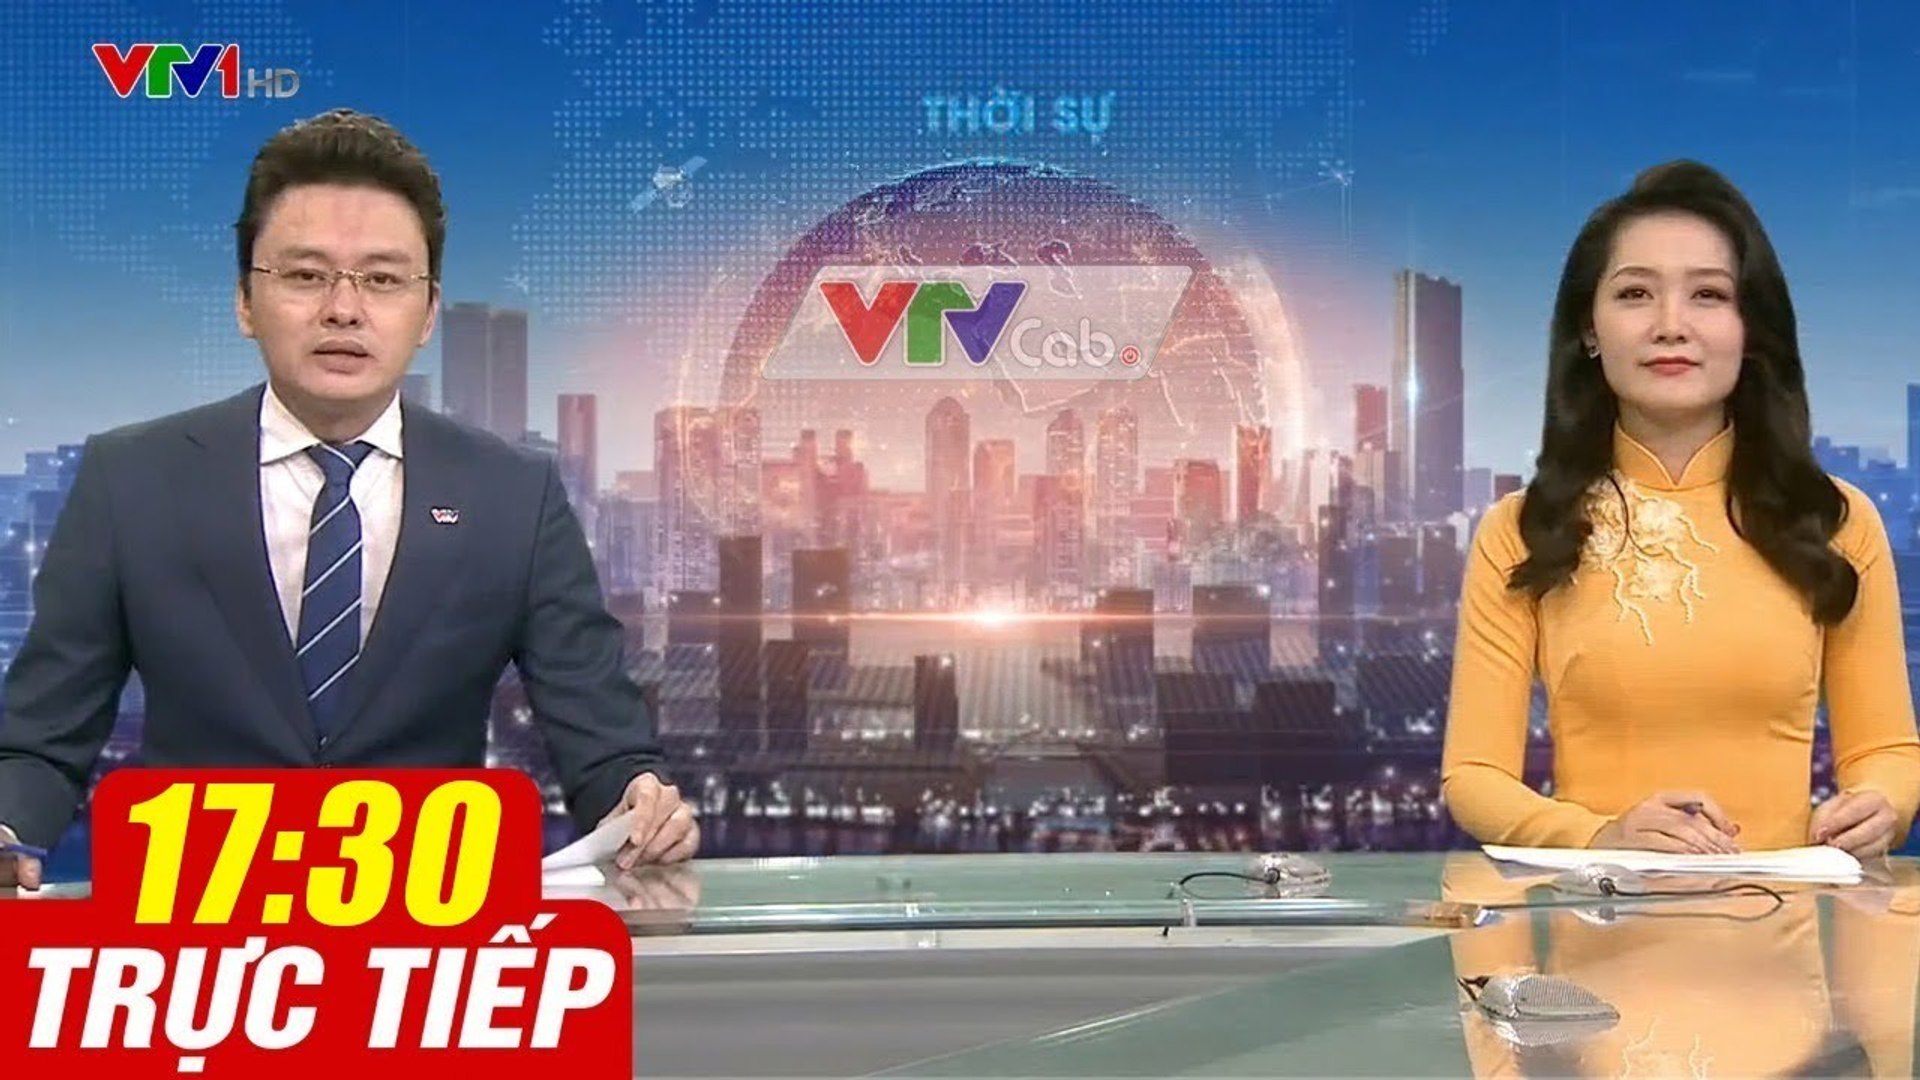 Trực Tiếp VIỆT NAM HÔM NAY 17h30 ngày 17.08.2020  Tin tức thời sự VTV1 mới nhất hôm nay